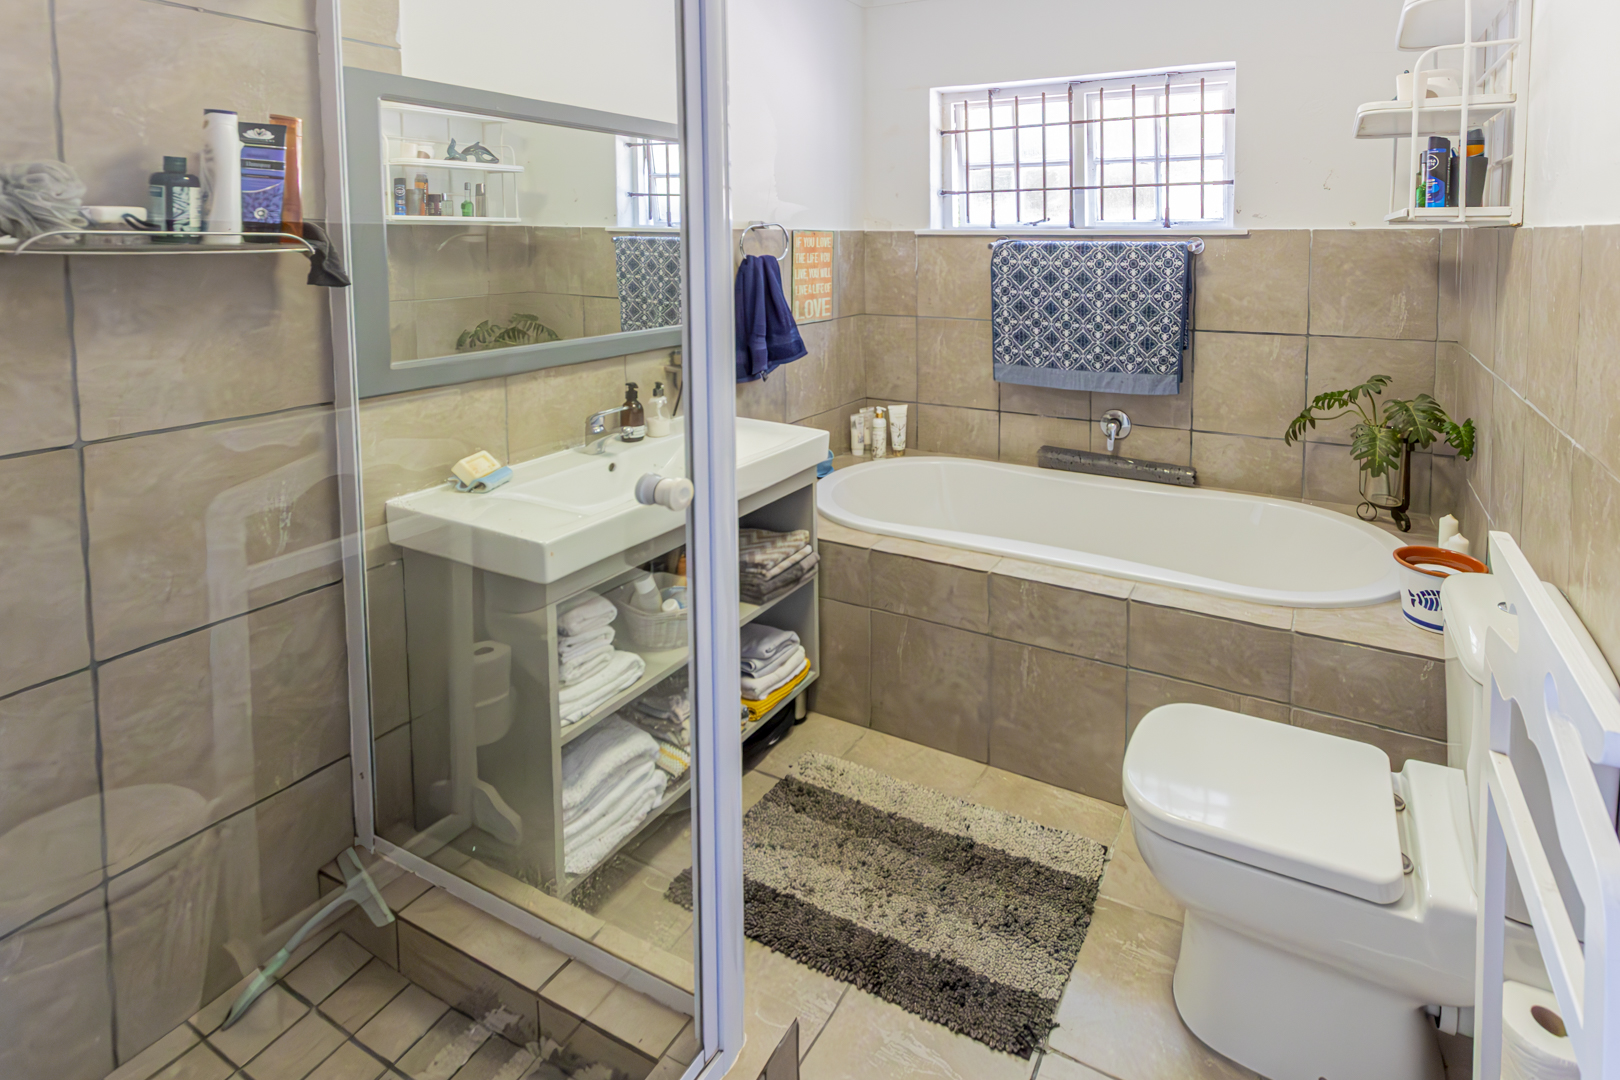 4 Bedroom Property for Sale in Waterfall KwaZulu-Natal